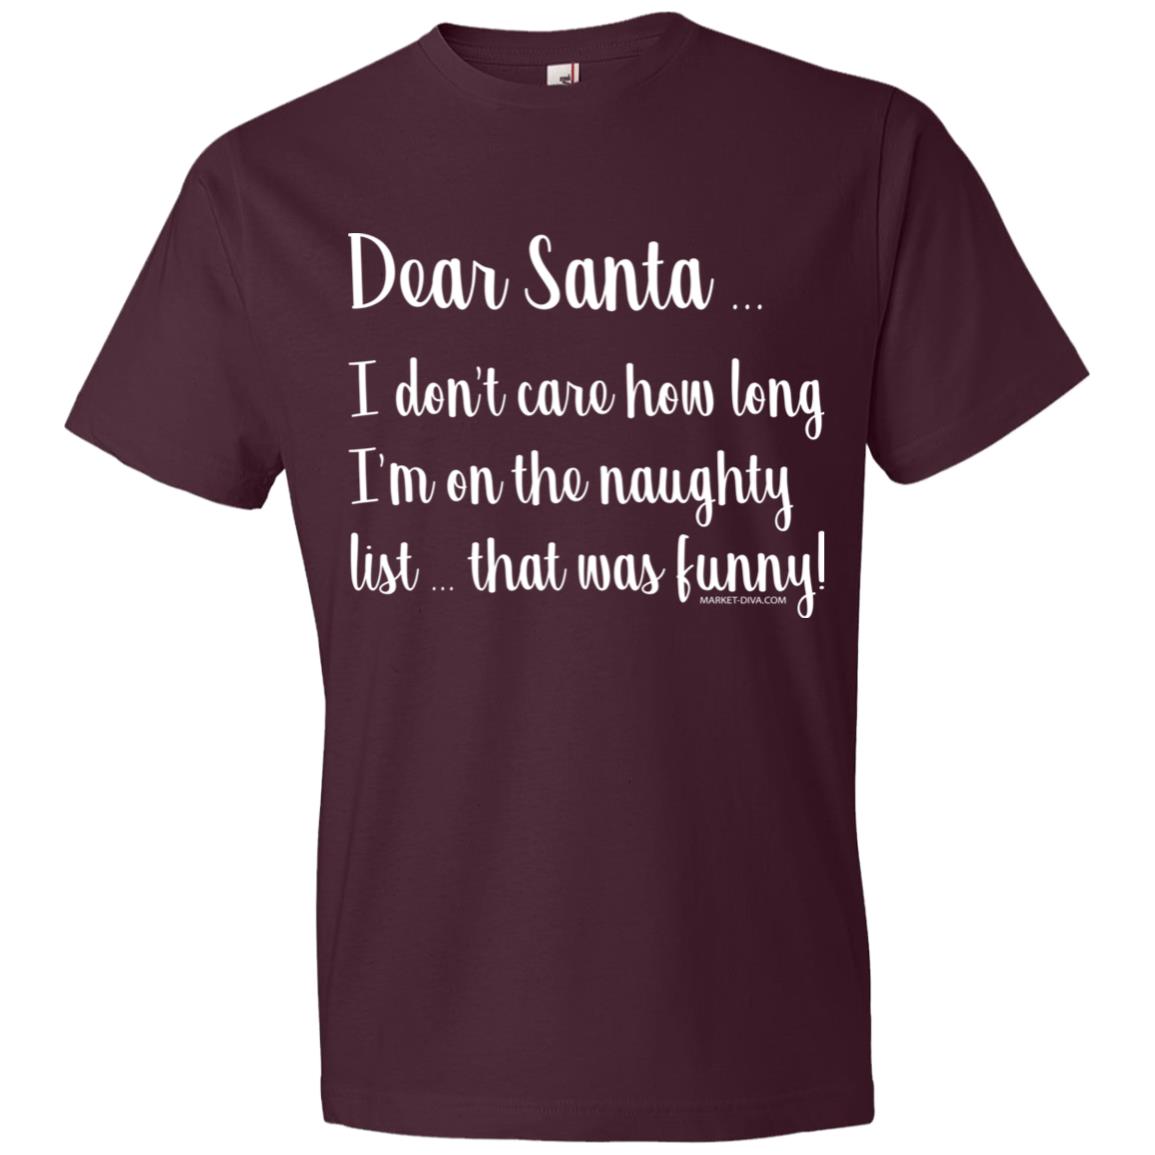 Christmas: Dear Santa - That was Funny!